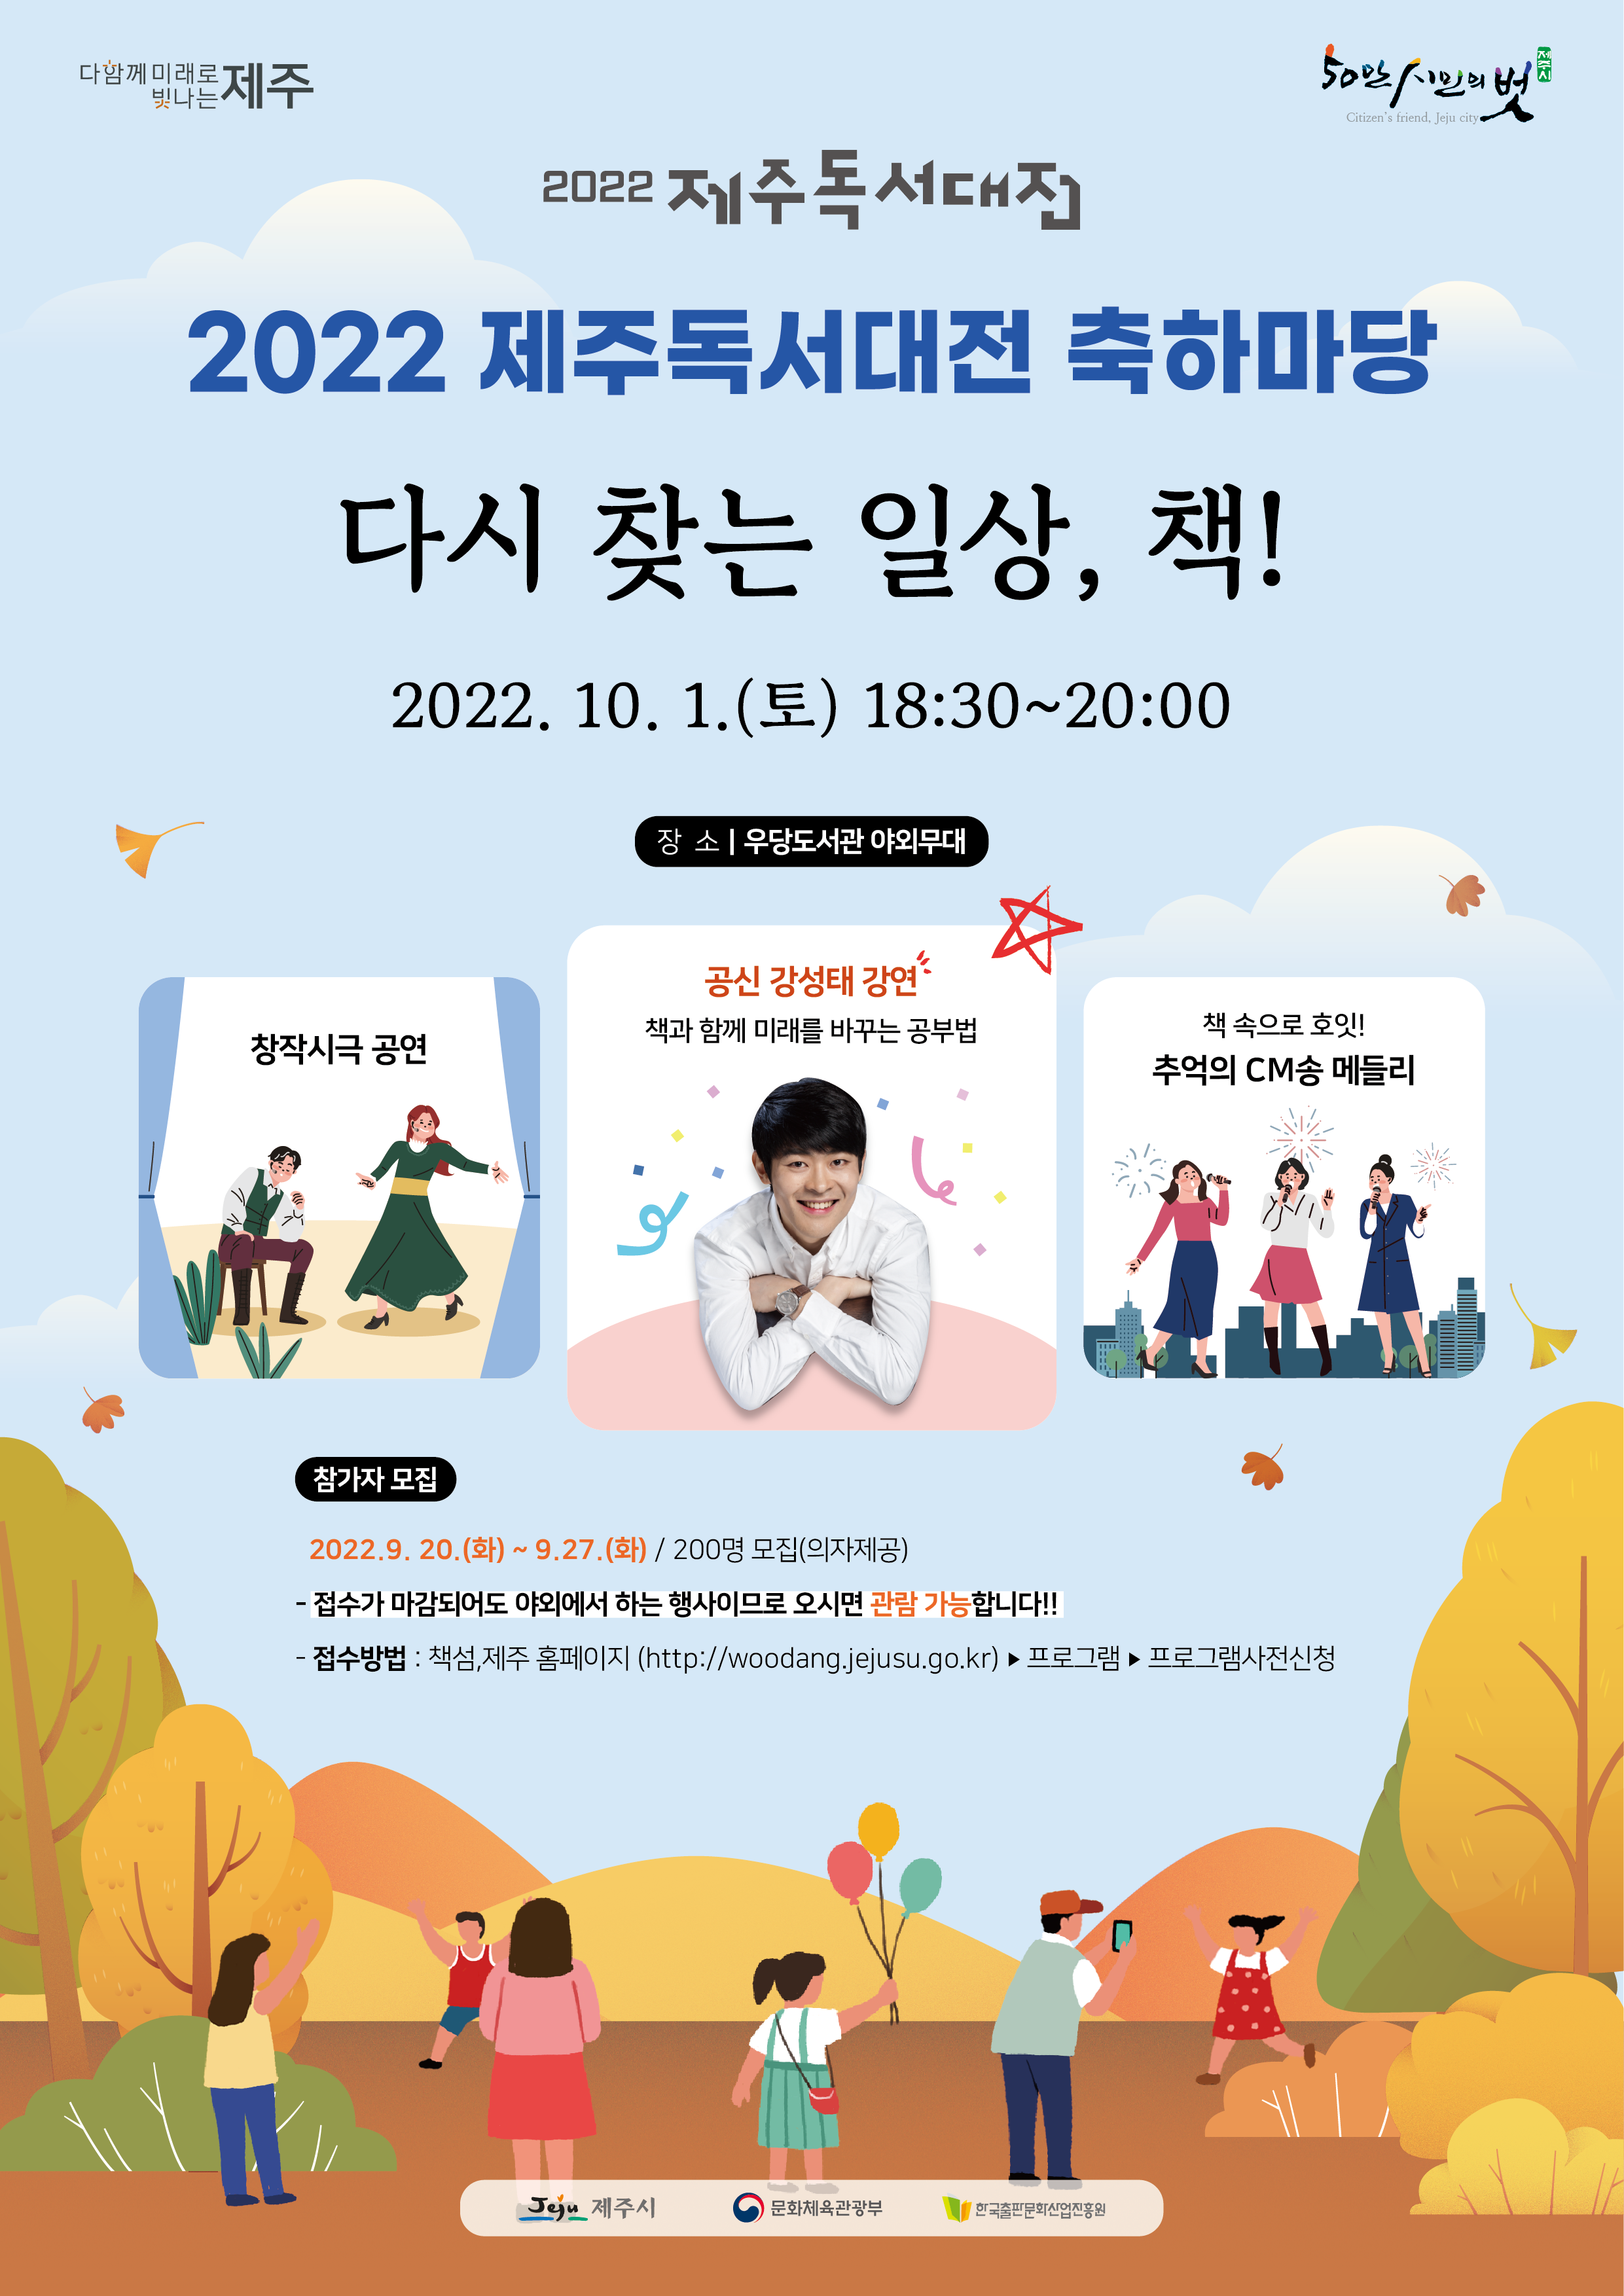 ☆☆ 2022 제주독서대전 '다시 찾는 일상 책! 축하마당(기념행사)' 개최 알림 ☆☆